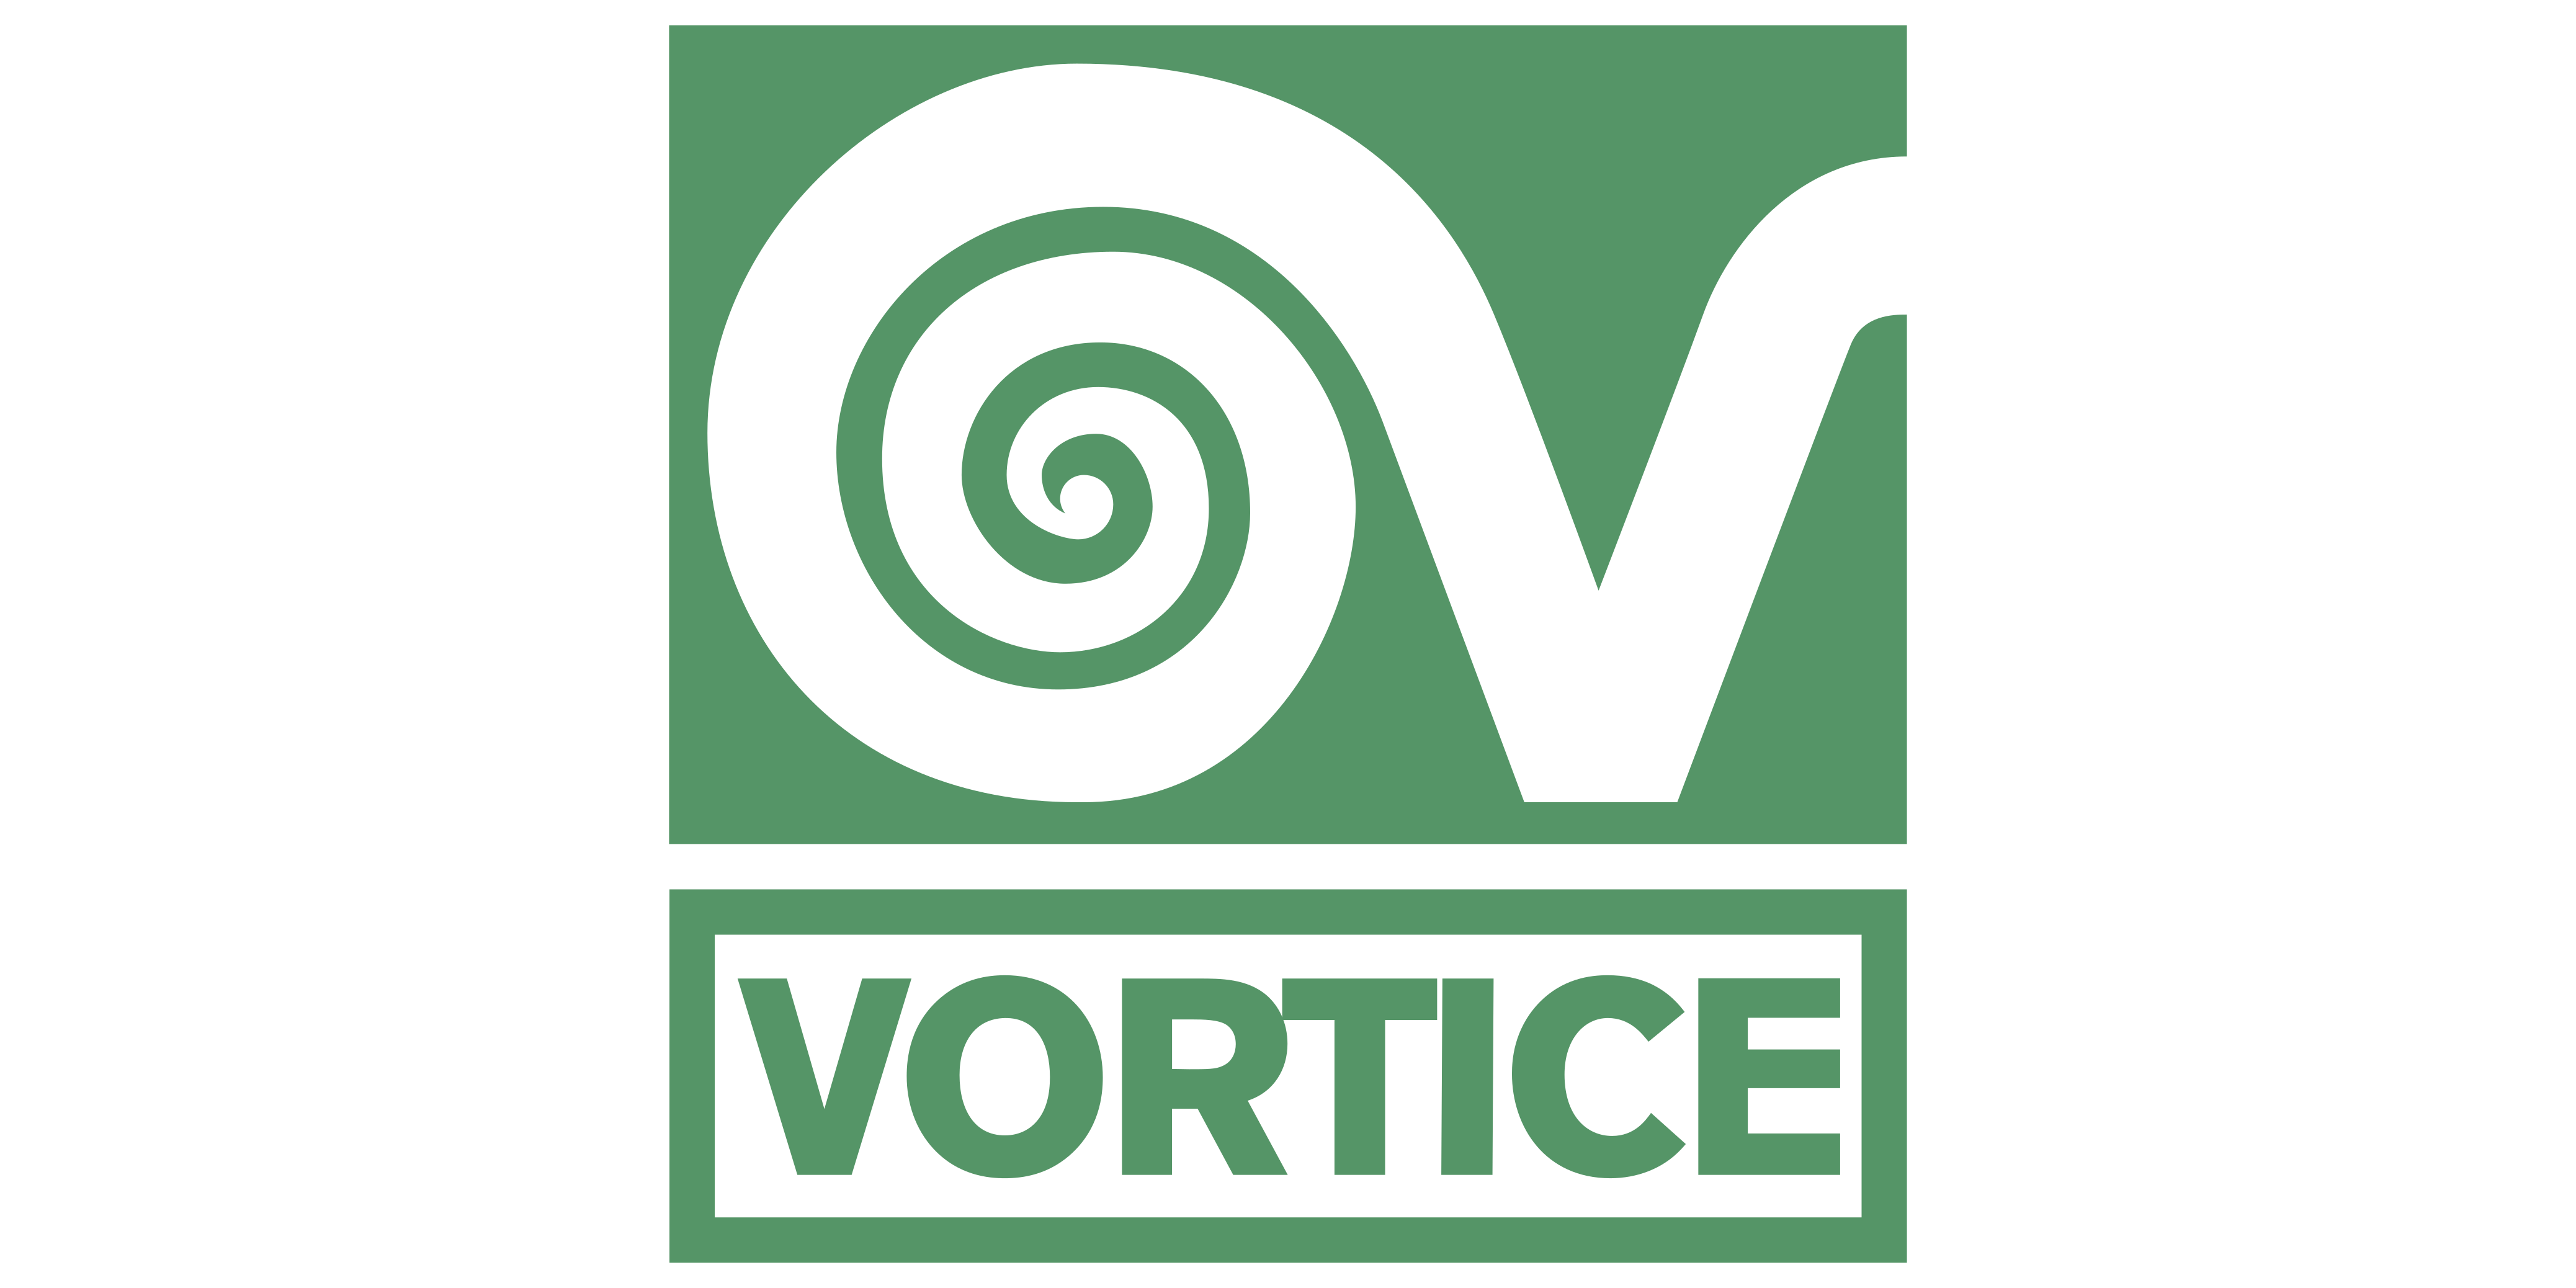 vortice-logo-png-transparent